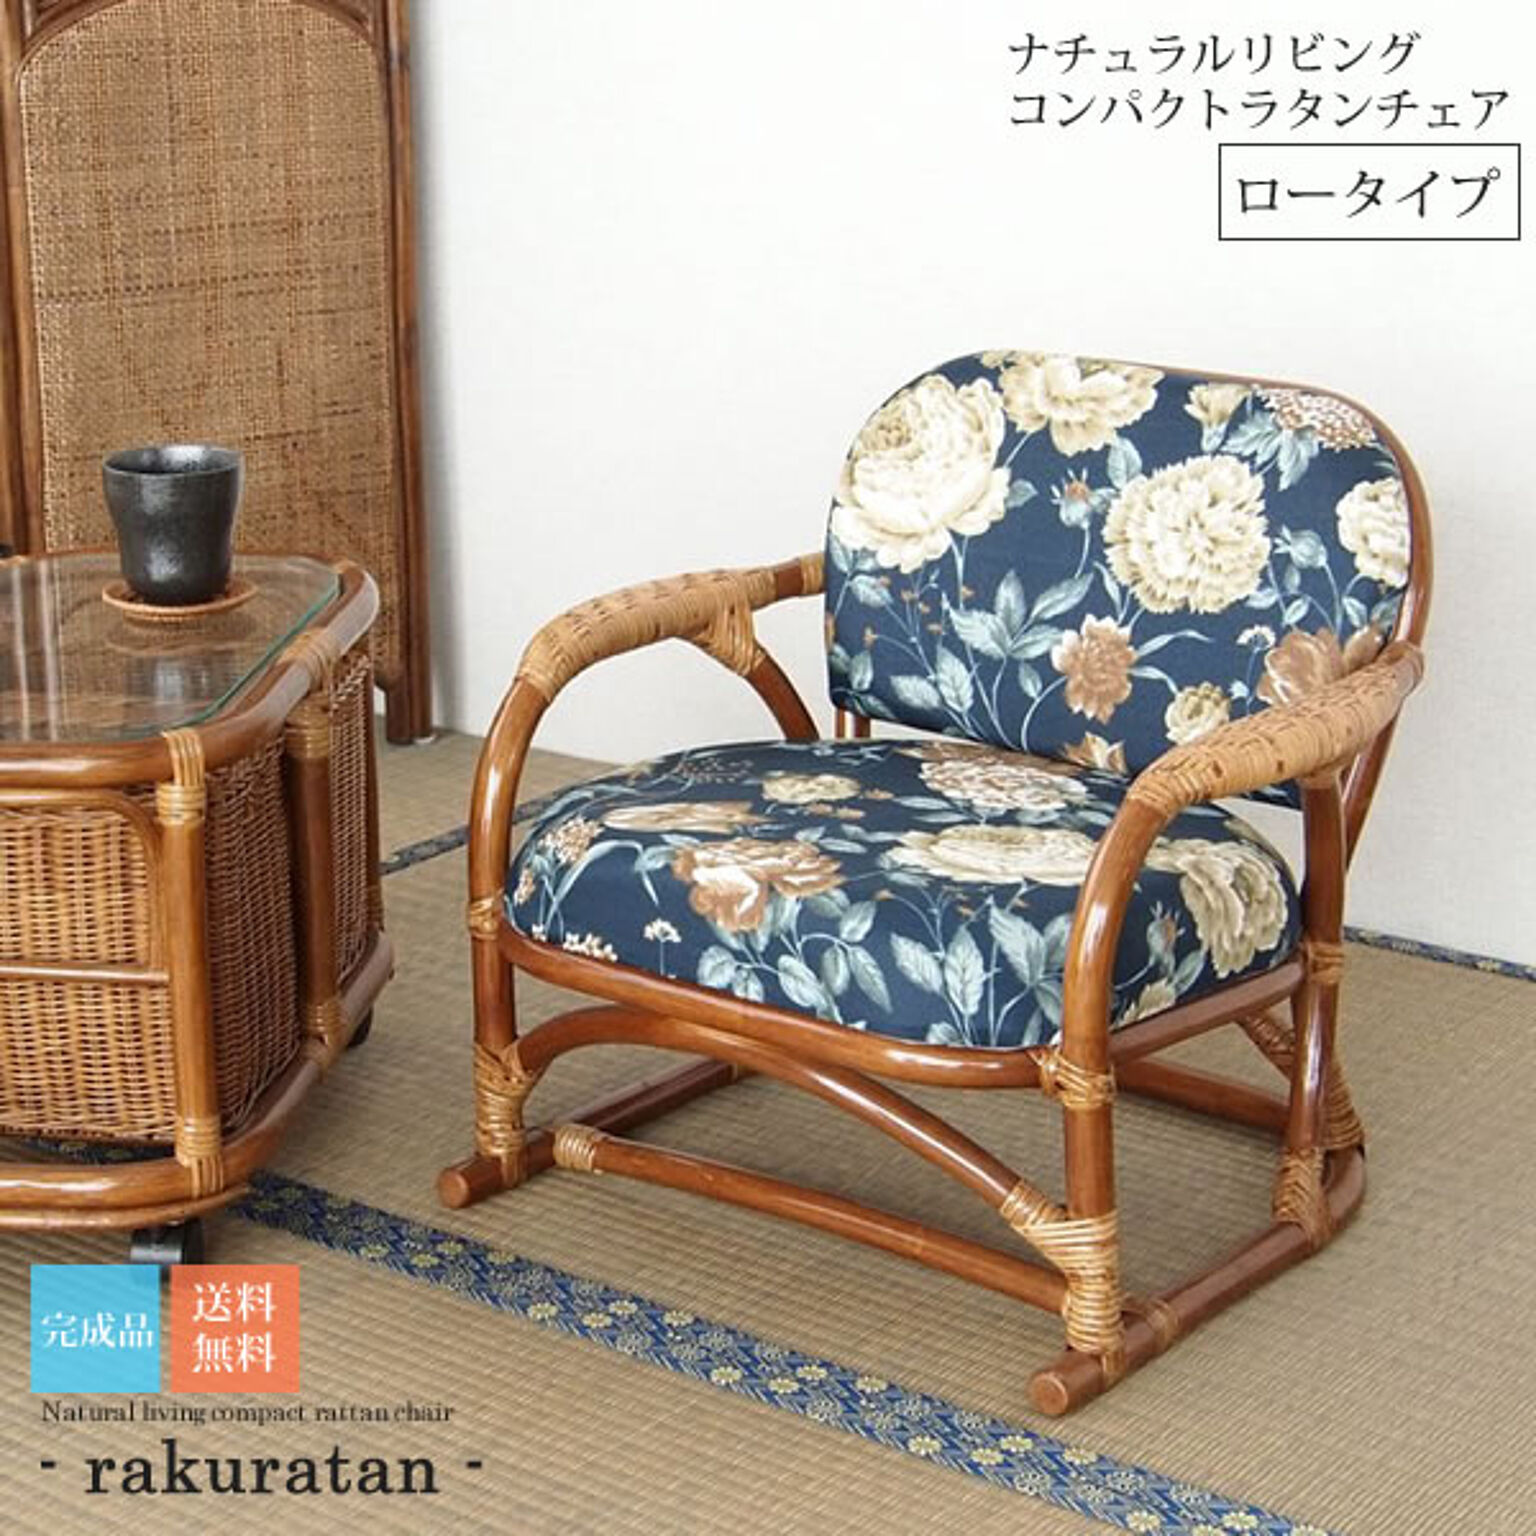 ロータイプ ： ナチュラルリビング コンパクトラタンチェア【rakuratan】 ブラウン(brown) (ナチュラル) 籐椅子 イス 椅子 腰かけ 一人掛け 1人掛け 